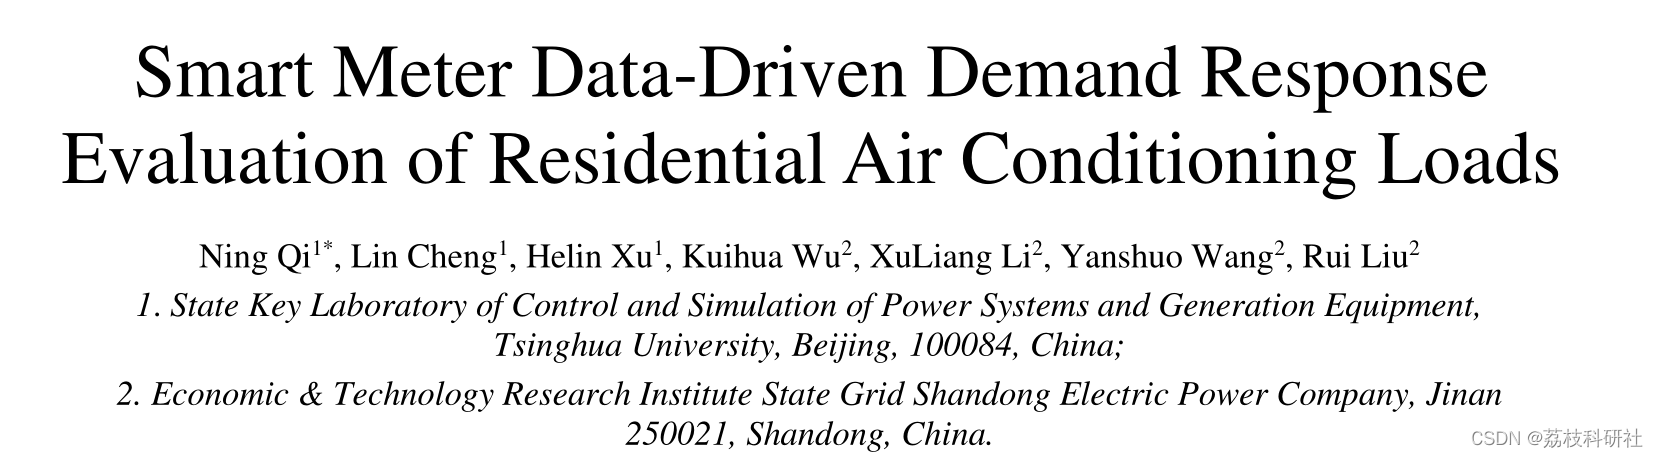 基于数据驱动的智能空调系统需求响应可控潜力评估研究（Matlab代码实现）